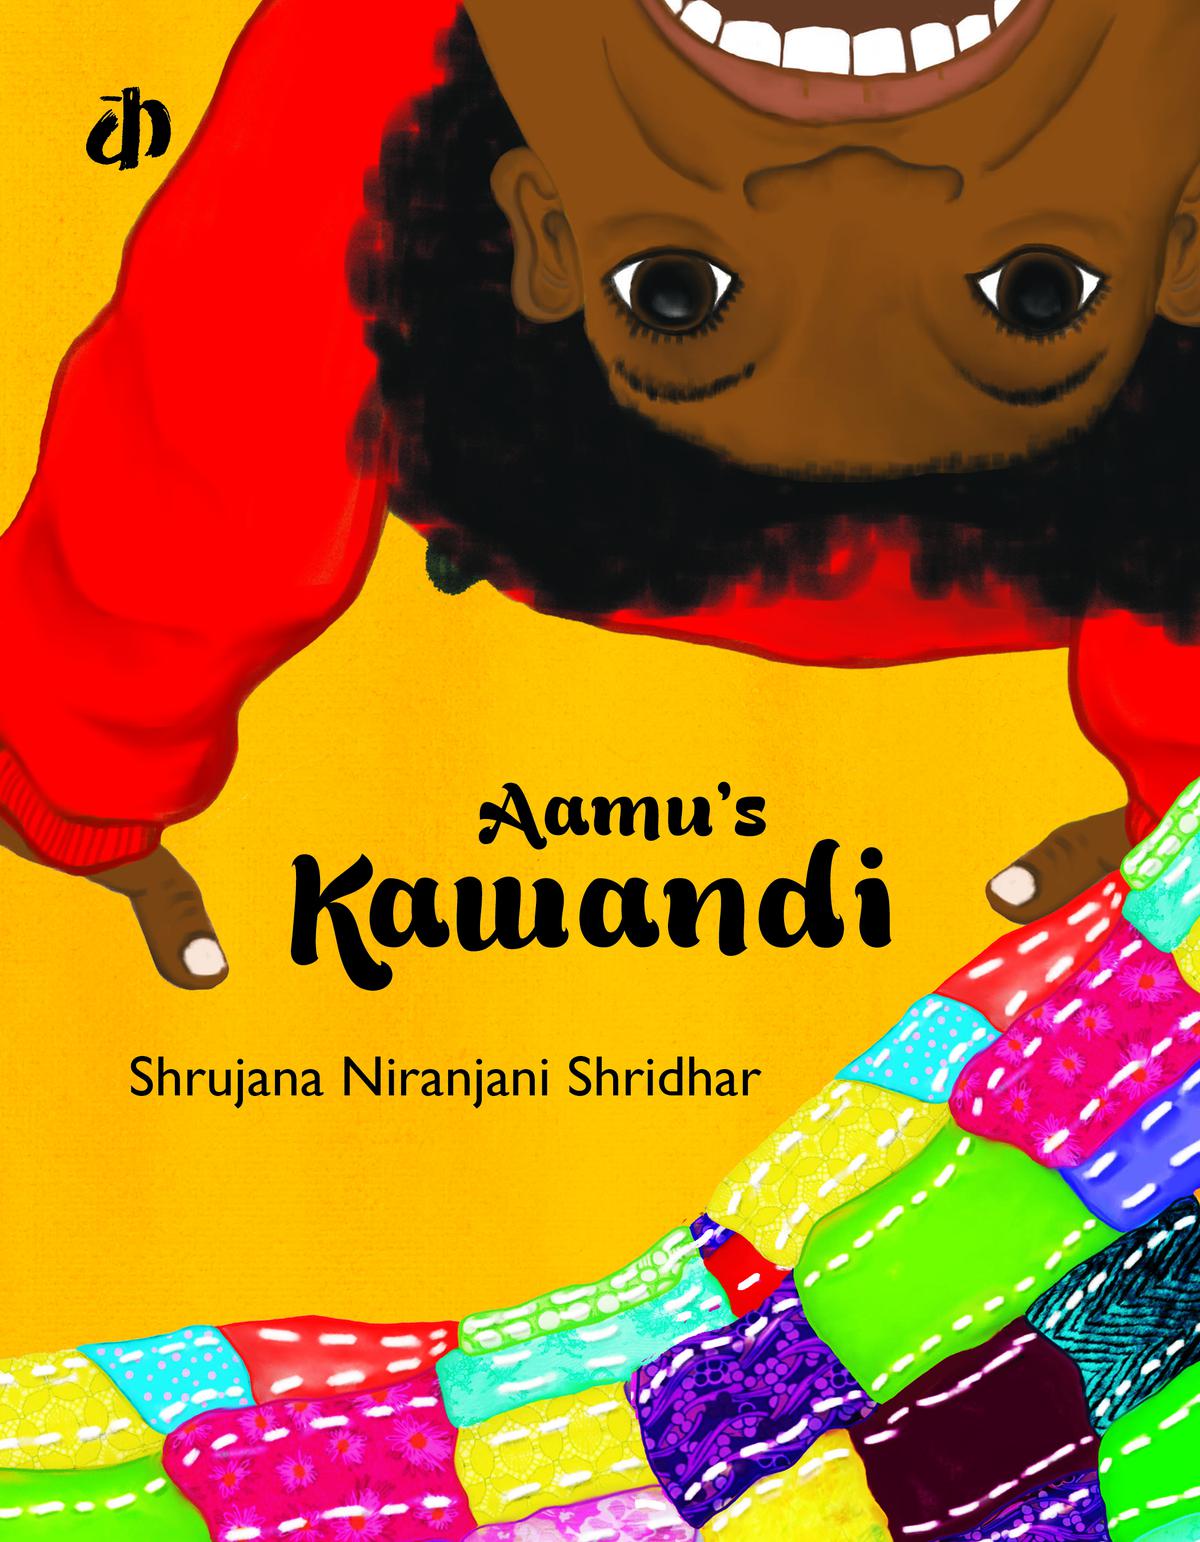 Tijdens een module voor het maken van prentenboeken voor kinderen in haar laatste jaar schreef en illustreerde Shrujana Niranjani Shridhar Aamu's Kawandi